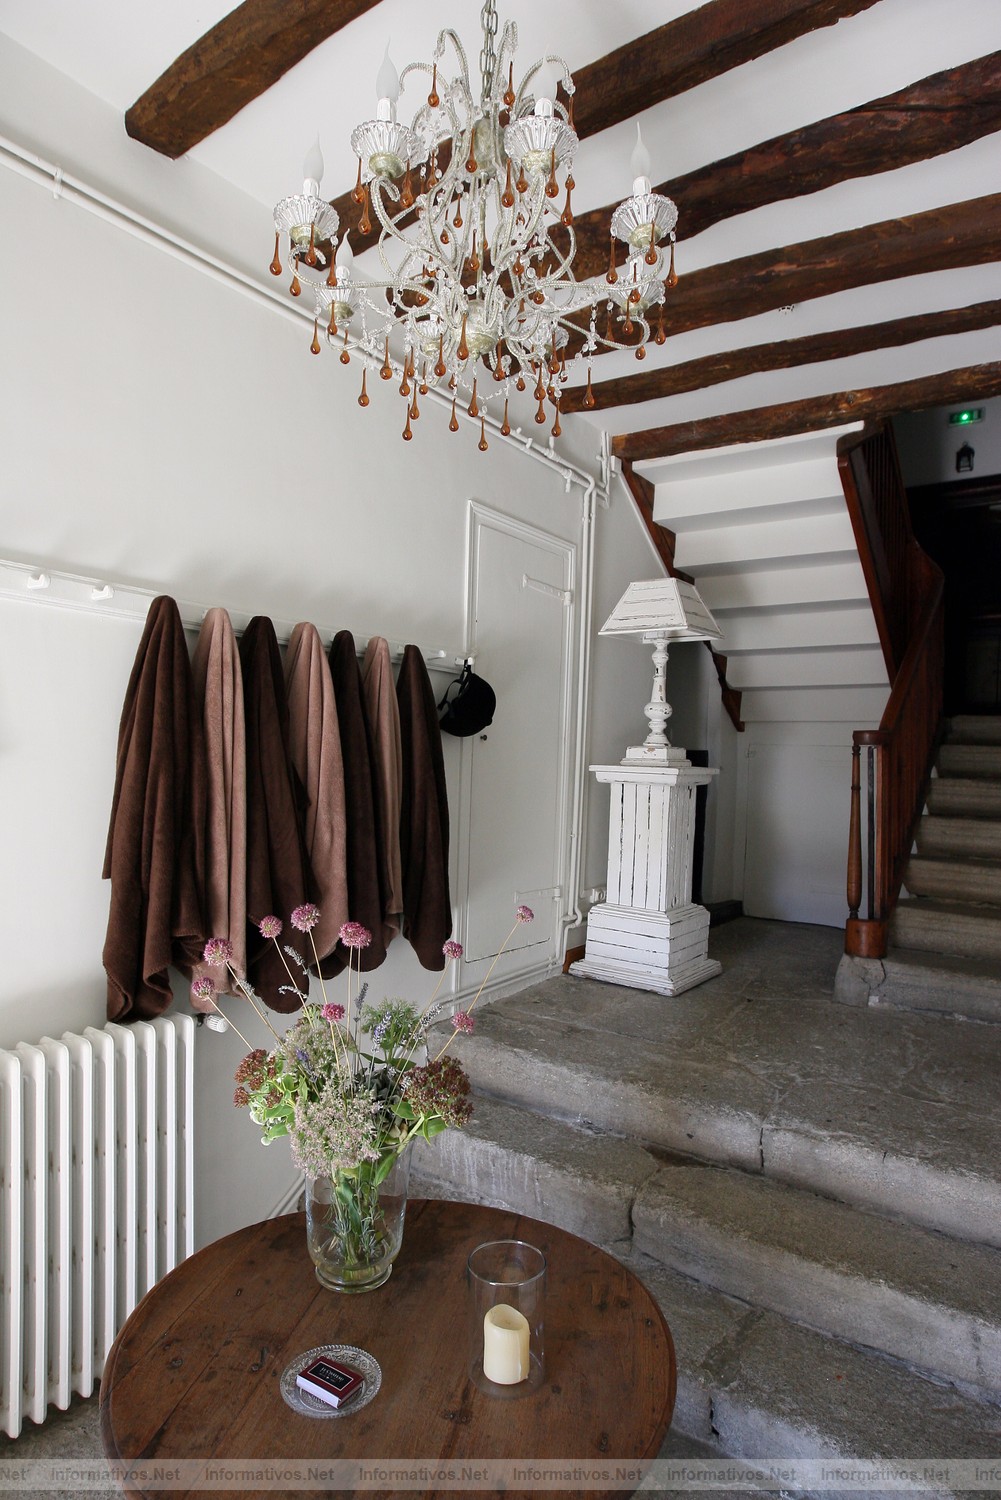 Enveitg, FR.07OCT011.- Château Brangoly, en la Cerdenya francesa. La entrada del hotel tiene un encanto especial